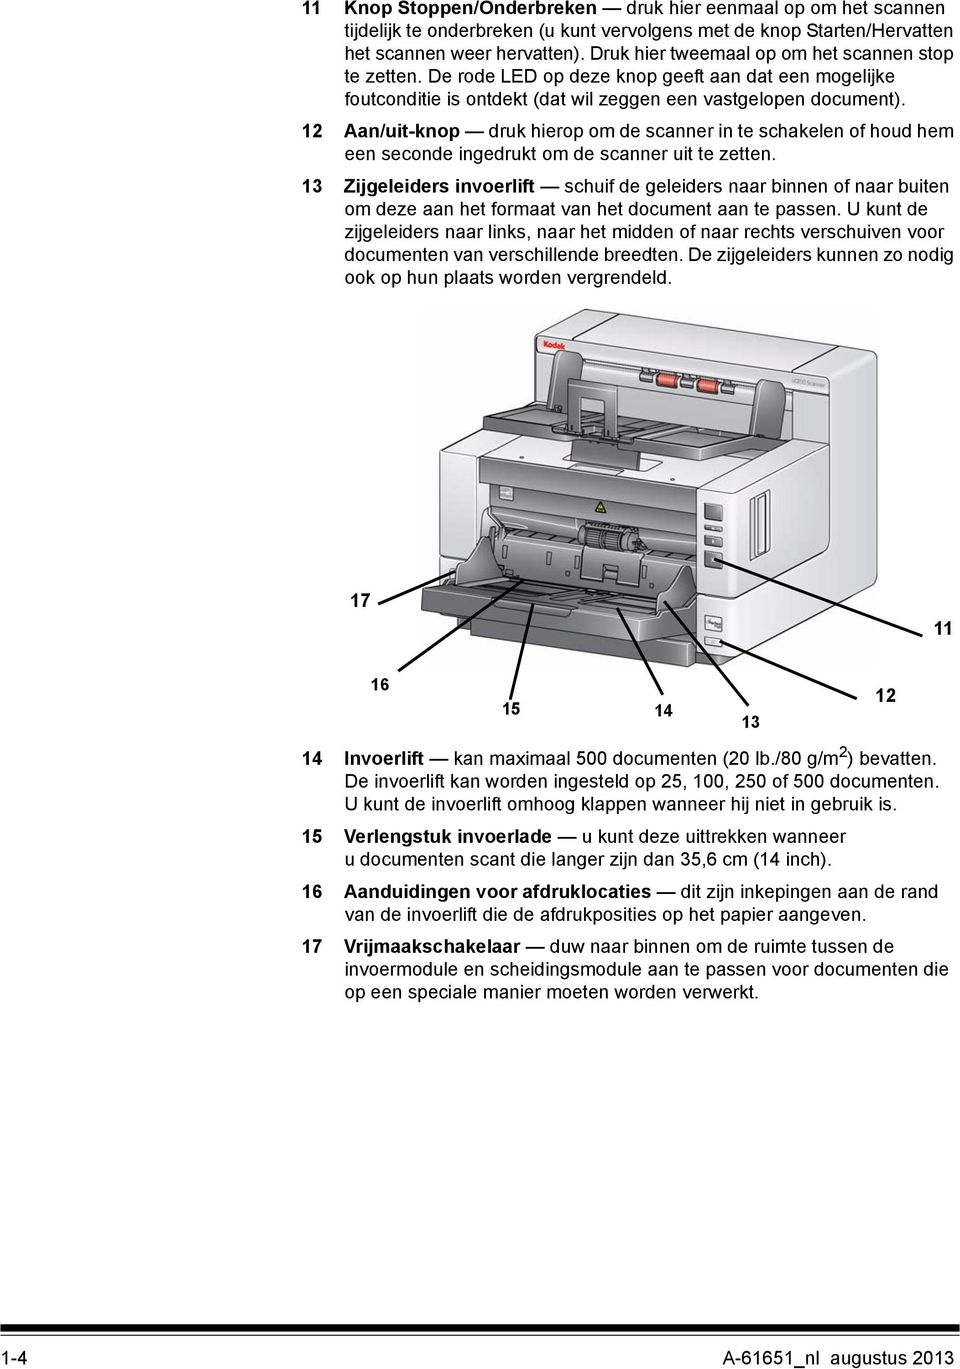 12 Aan/uit-knop druk hierop om de scanner in te schakelen of houd hem een seconde ingedrukt om de scanner uit te zetten.